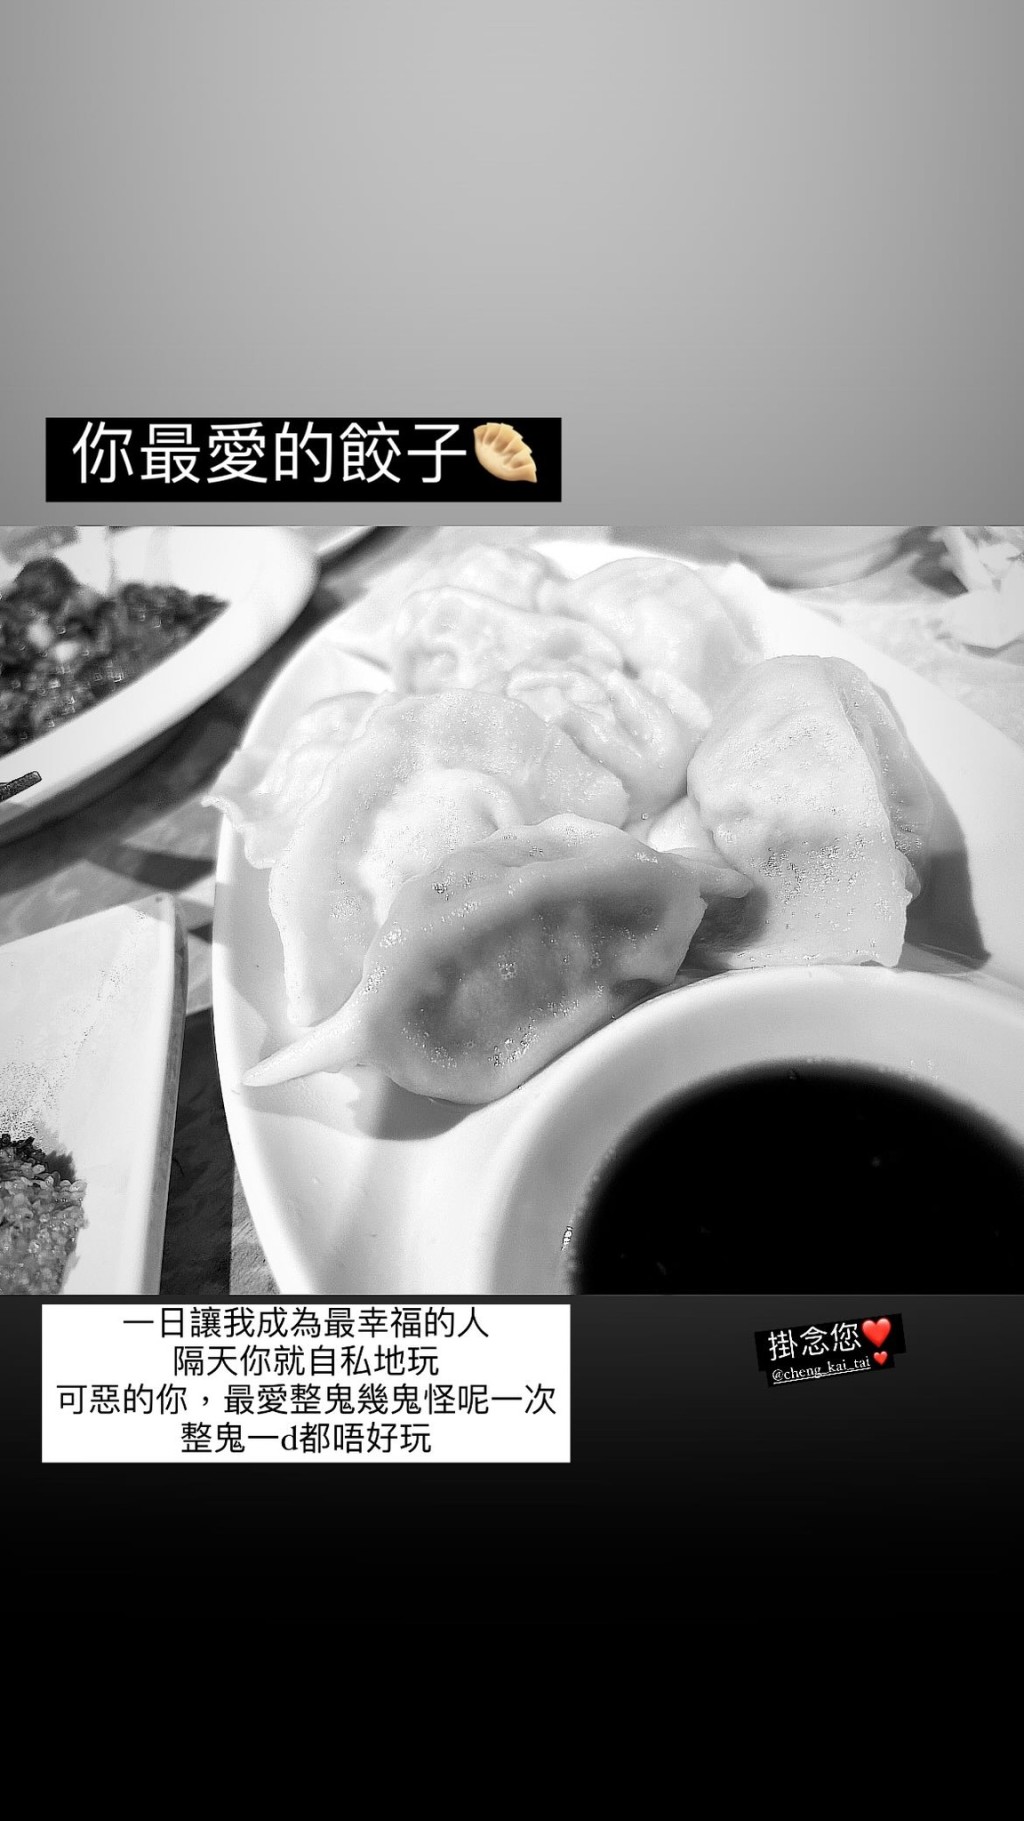 王雁芝昨日在IG Story貼出鄭啟泰最愛的餃子。